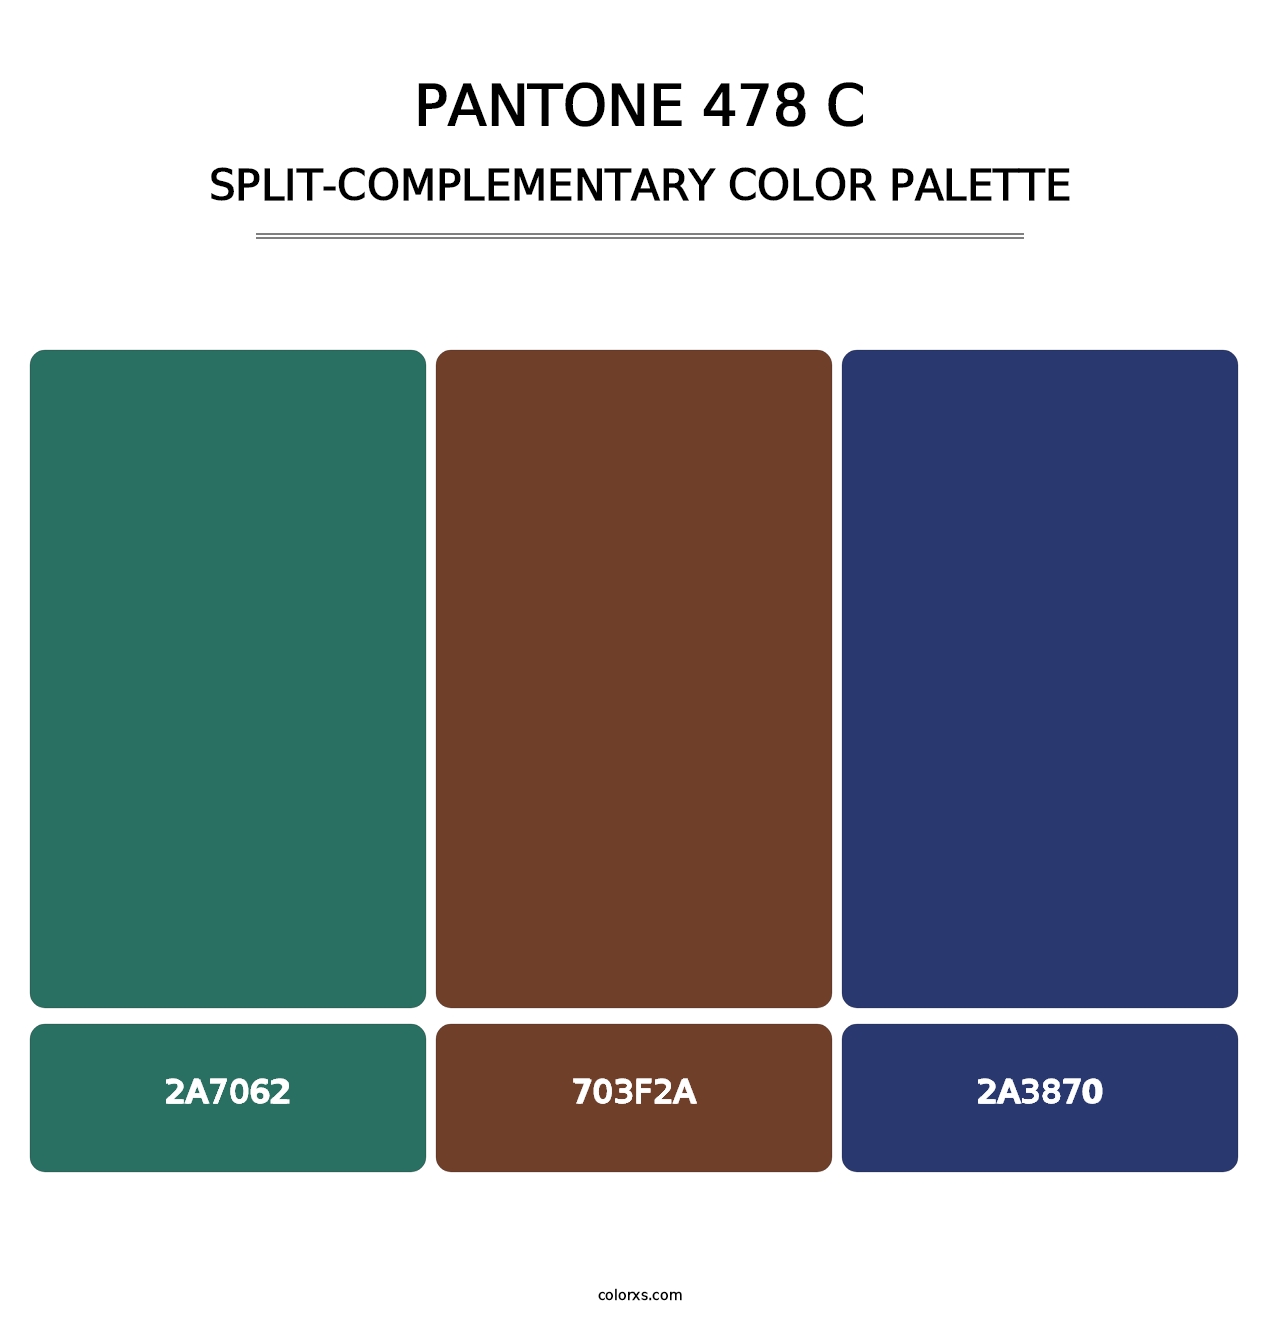 PANTONE 478 C - Split-Complementary Color Palette